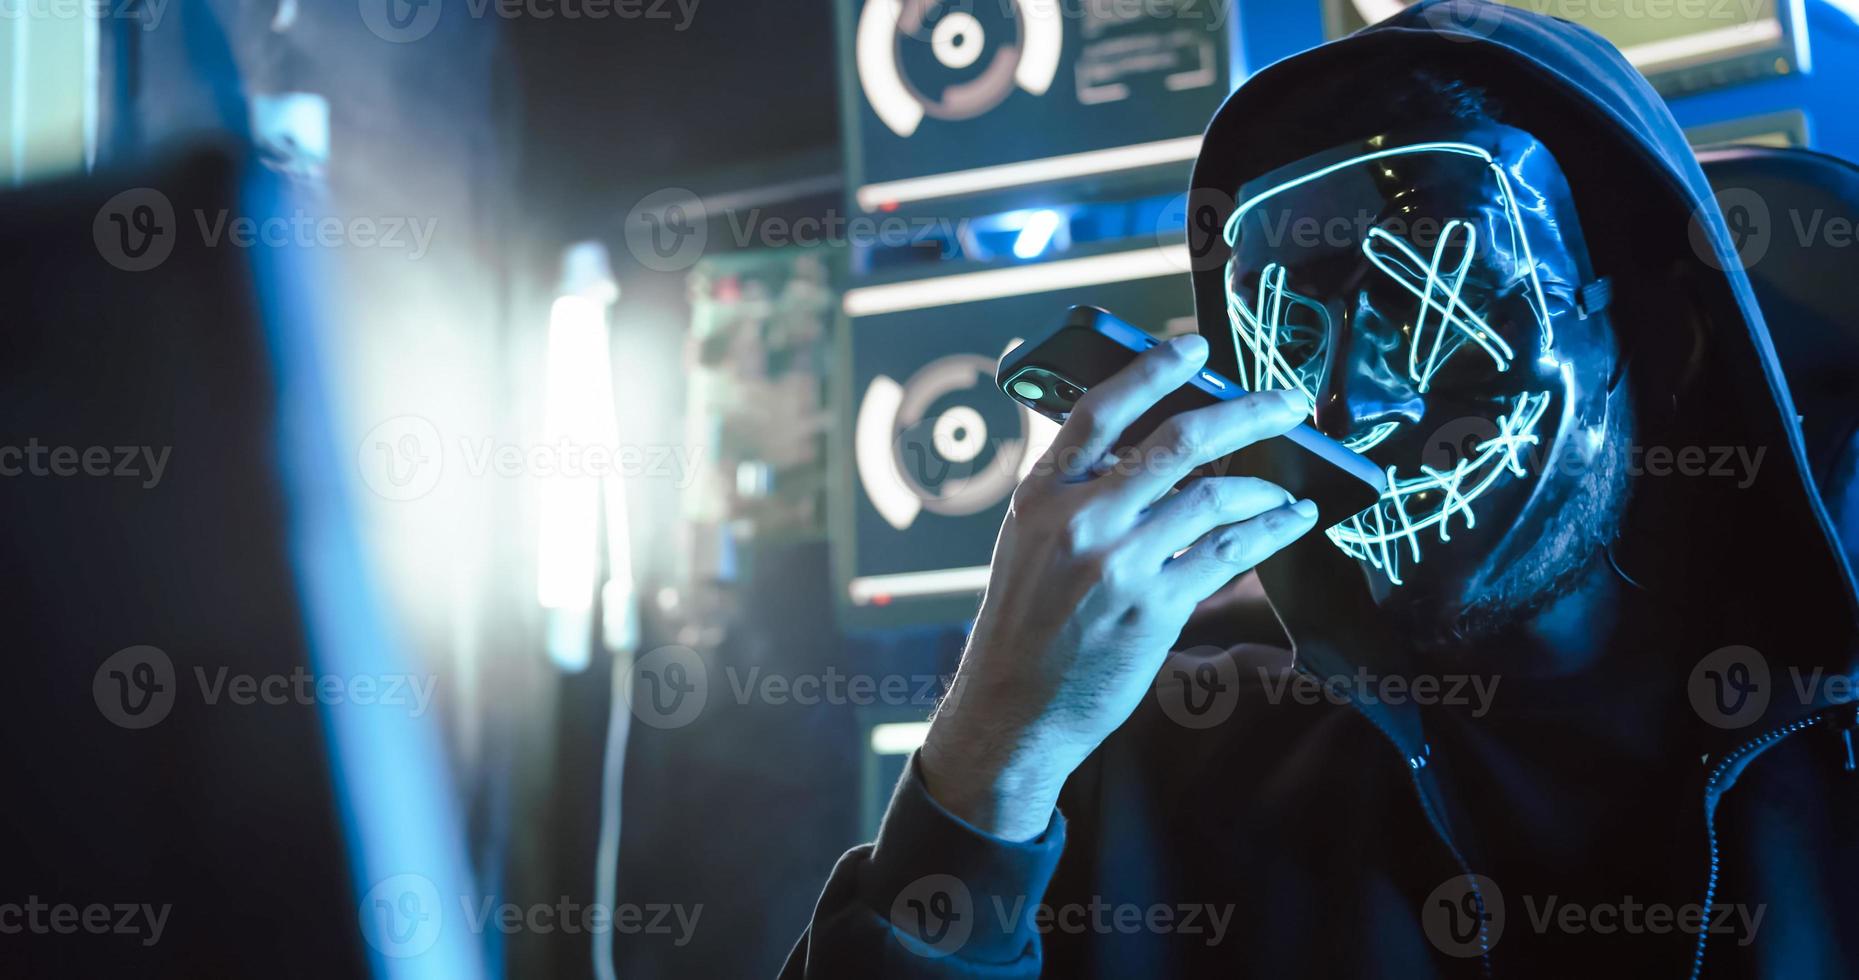 Ein Hacker, der eine Maske trägt, um sein Gesicht zu bedecken, verwendet Computer, um Daten zu hacken, um Lösegeld von Opfern zu erhalten. foto